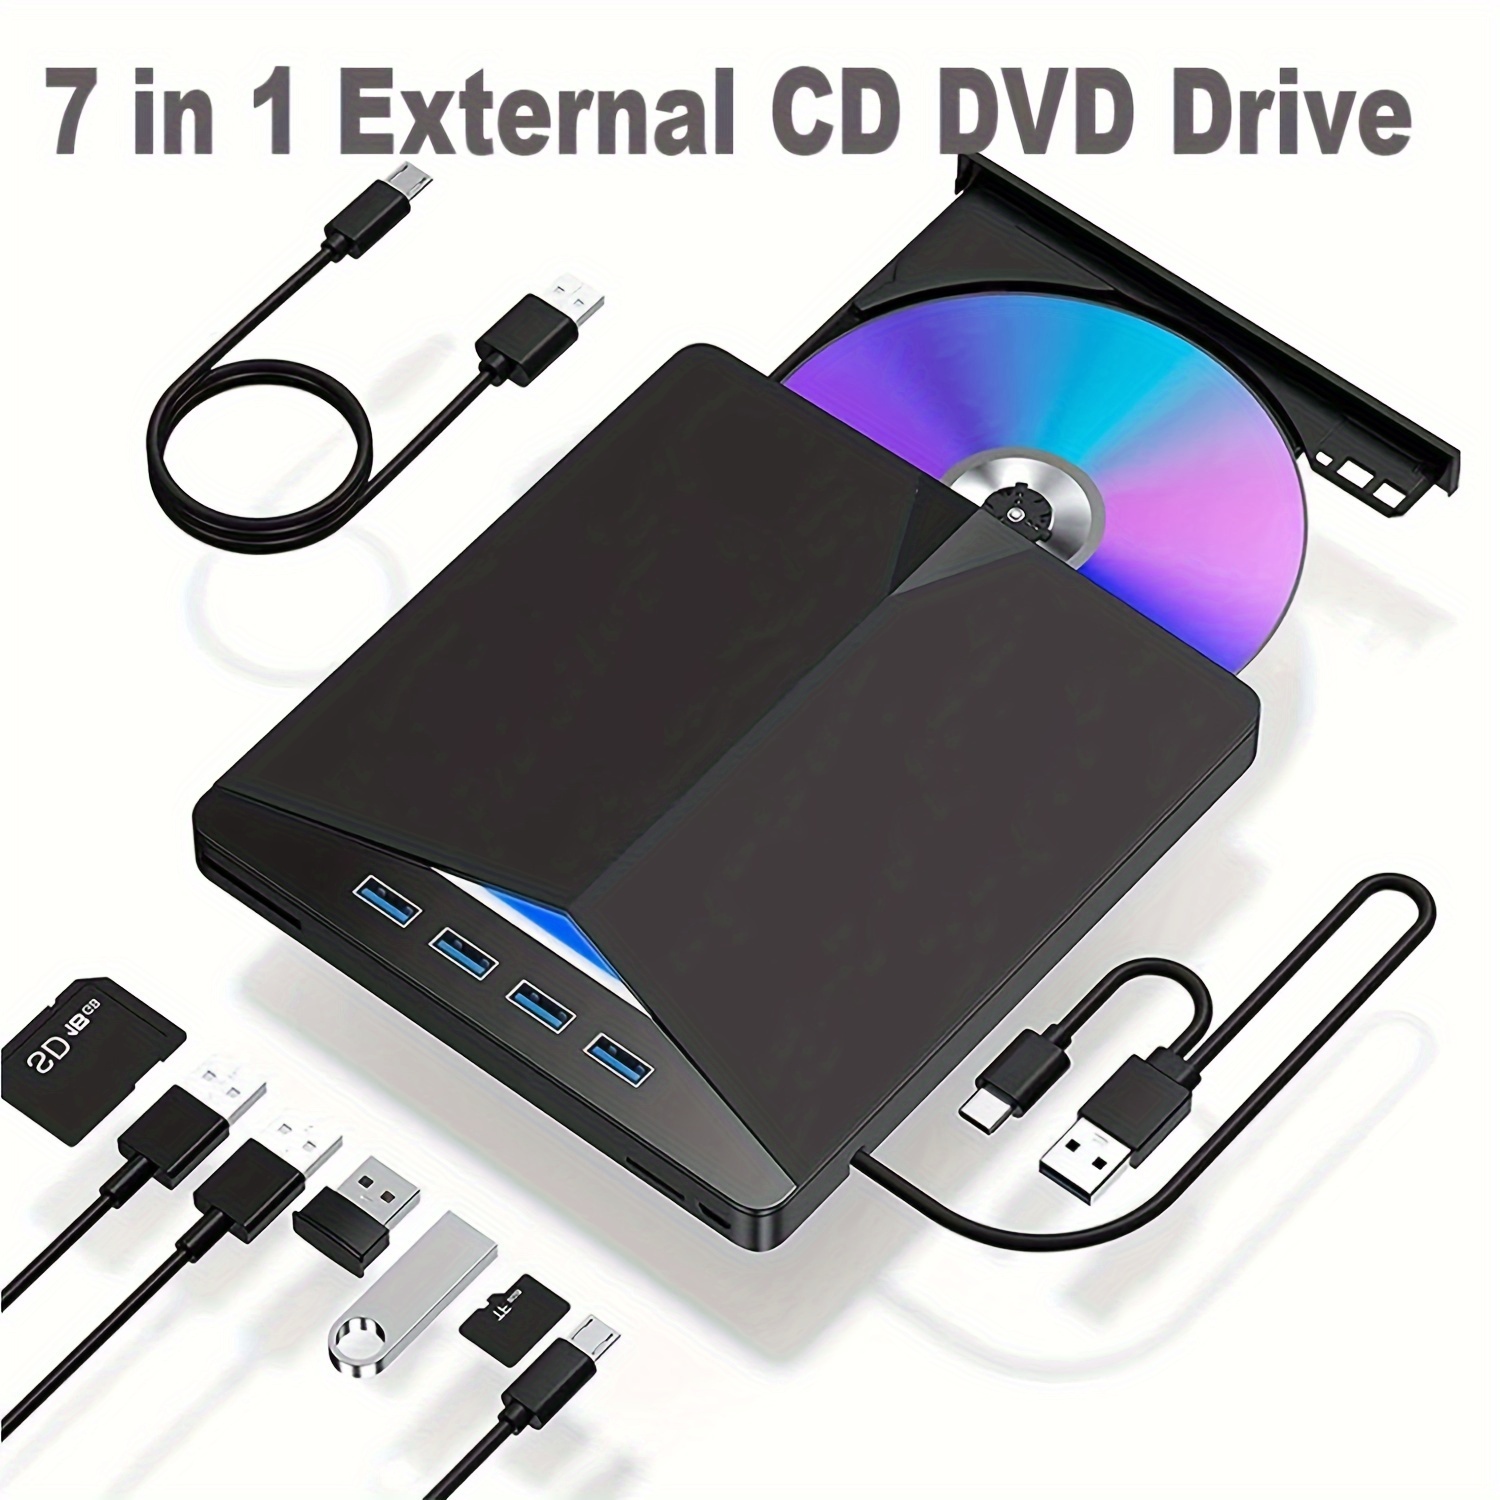 Lecteur CD et DVD Externe pour PC Portable + Mac - USB 3.0 Transmission  Haute Vitesse - Câble USB Fourni - Compatibilite Windows et Mac OS - Noir